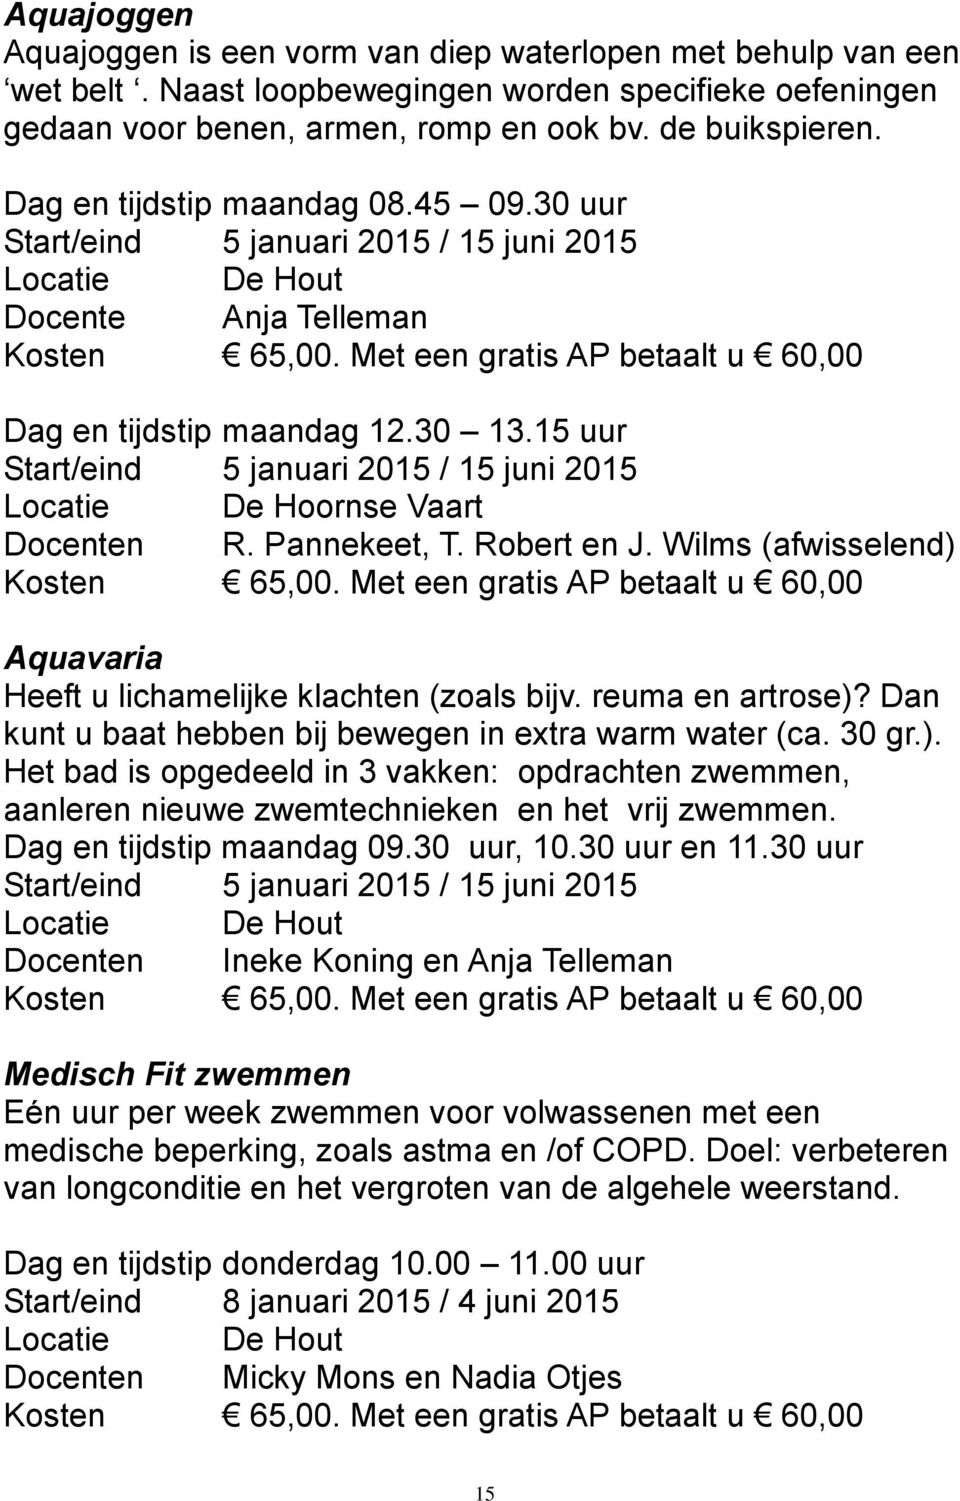 15 uur Start/eind 5 januari 2015 / 15 juni 2015 Locatie De Hoornse Vaart Docenten R. Pannekeet, T. Robert en J. Wilms (afwisselend) Kosten 65,00.